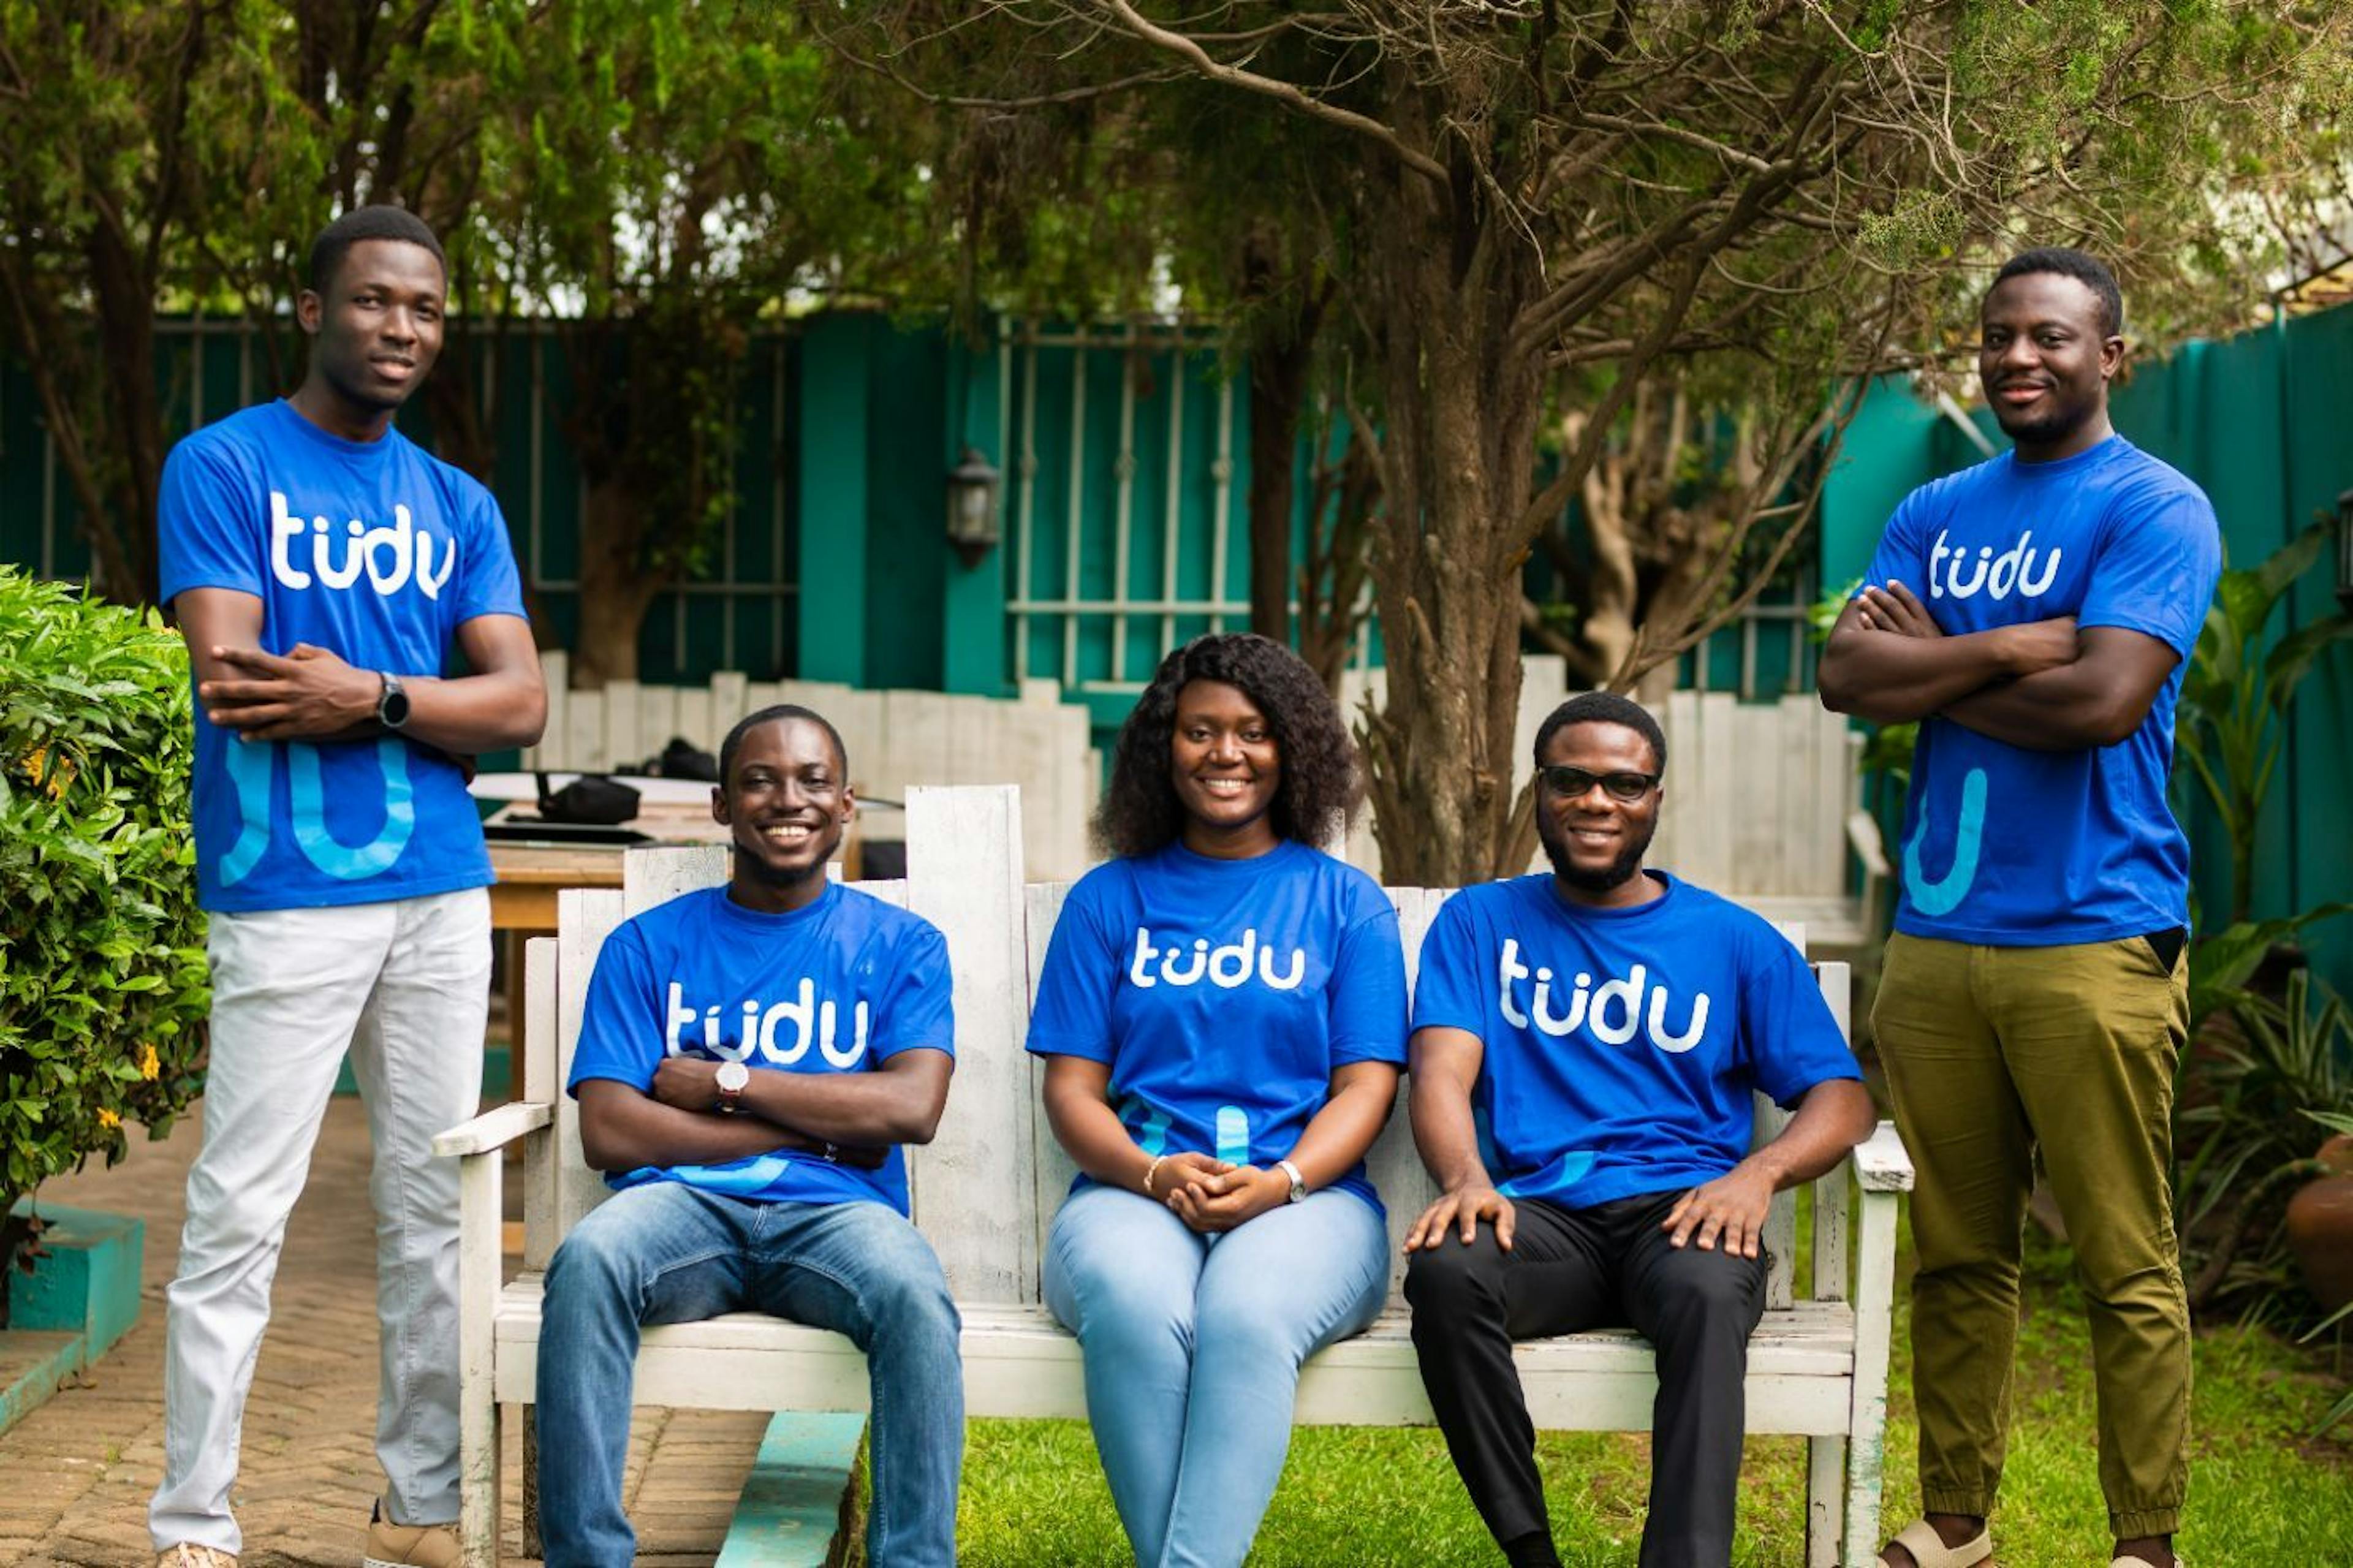 featured image - Thay đổi thương mại xã hội ở Châu Phi - Phỏng vấn Ứng cử viên khởi nghiệp của năm, Tudu